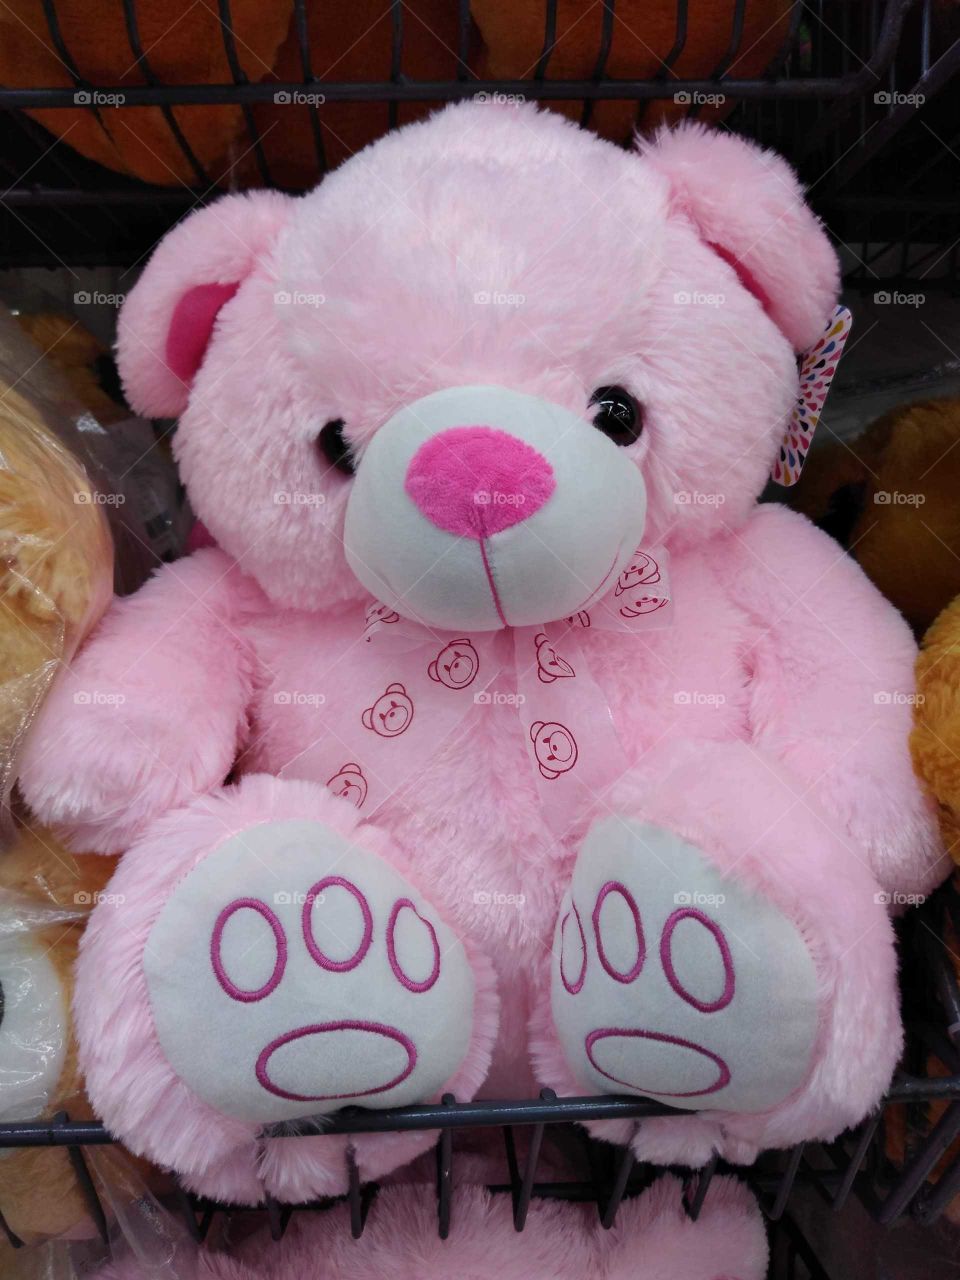 A cute pink teddy